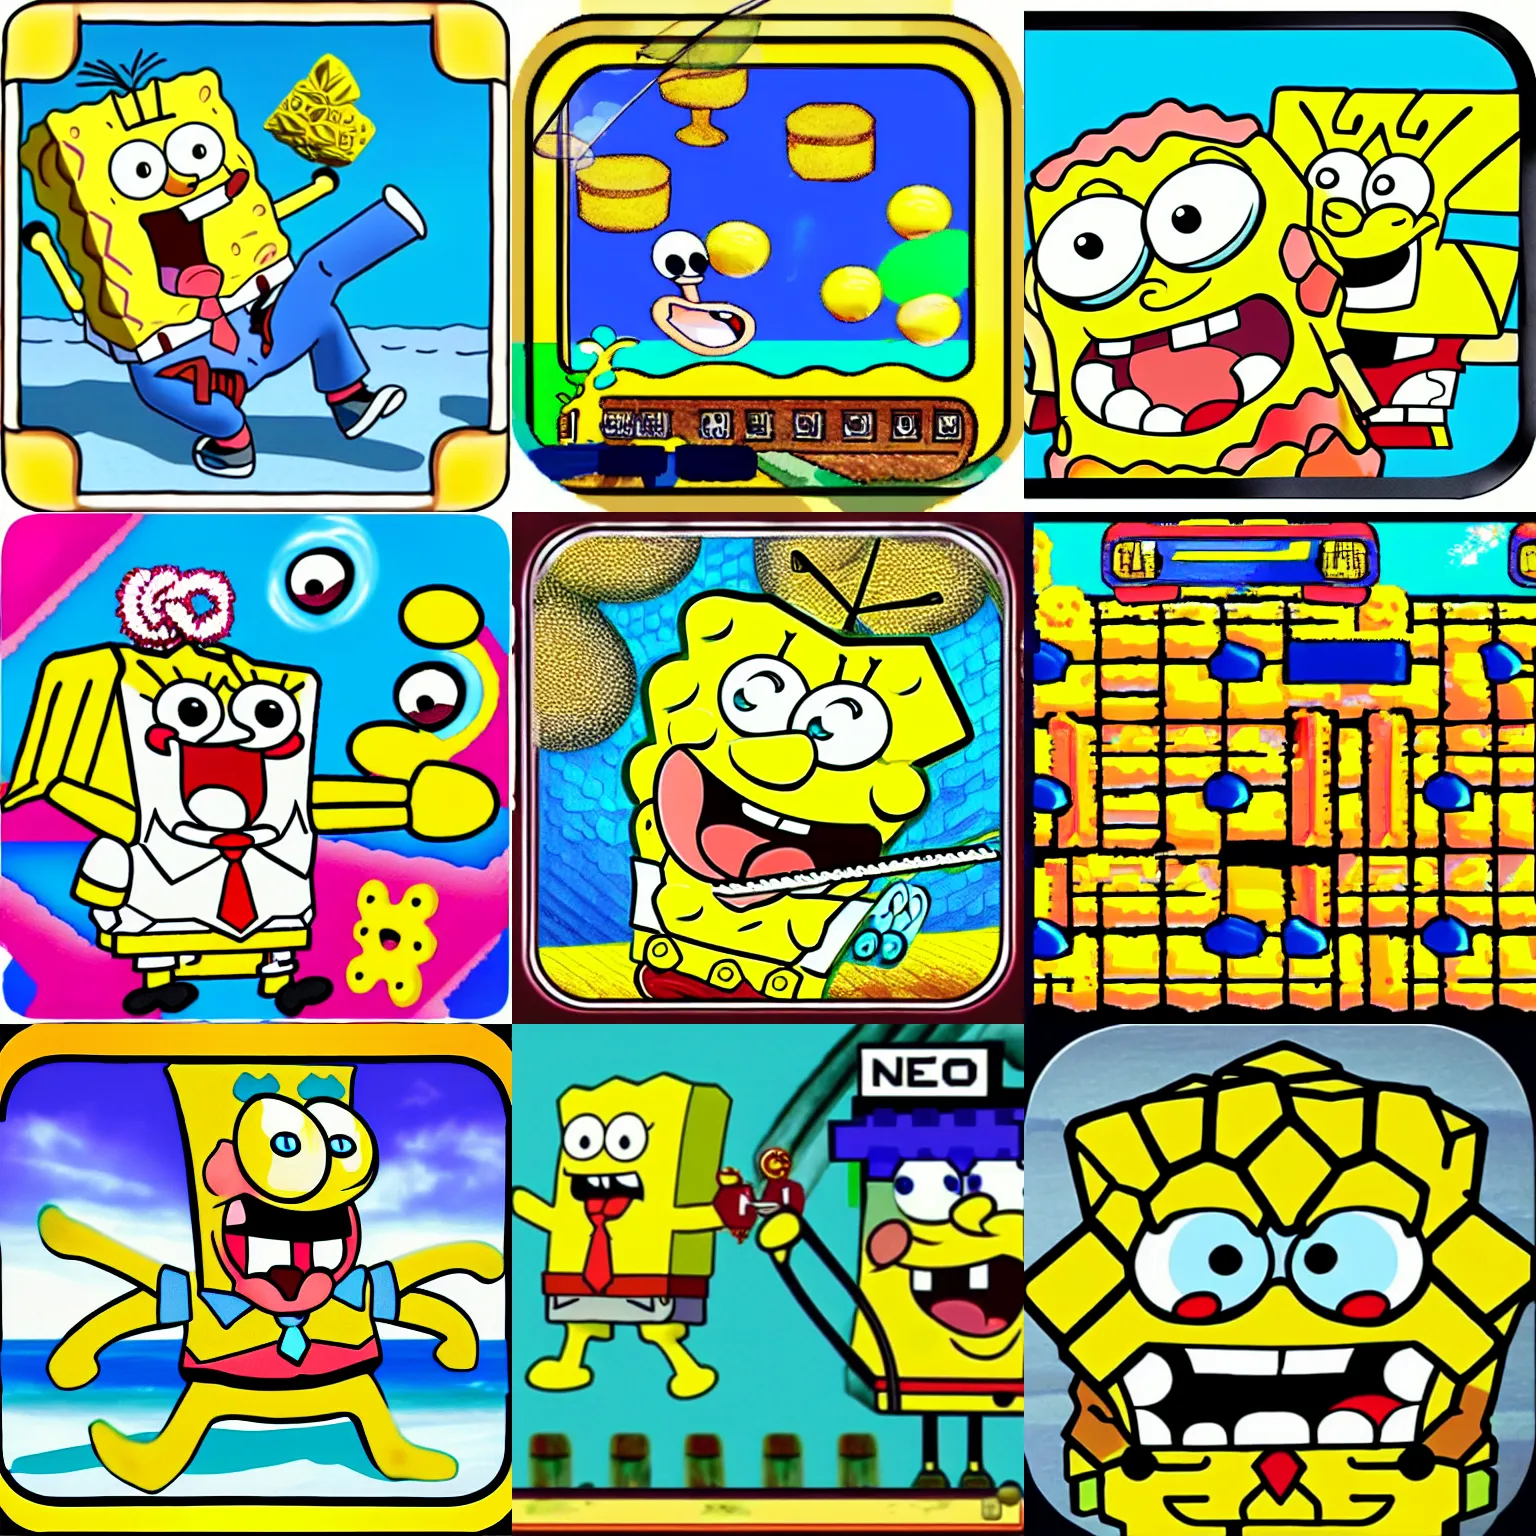 Prompt: neo geo spongebob game